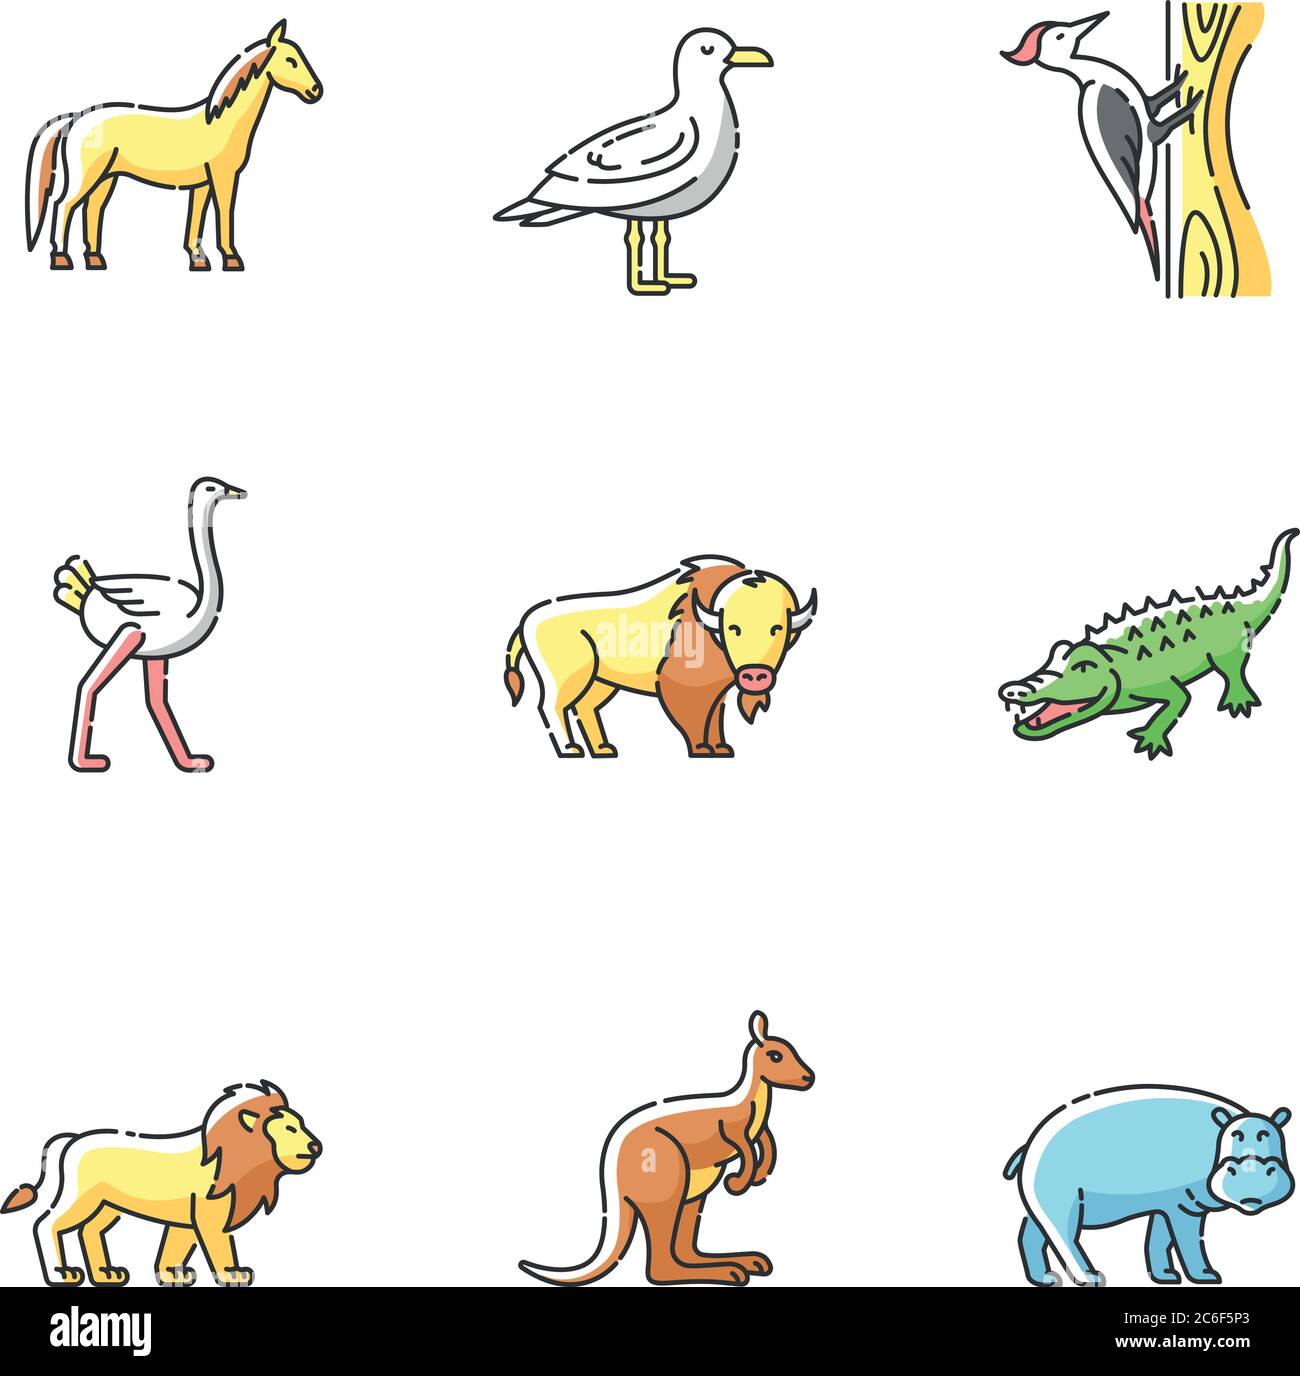 Animali volanti e terrestri set di icone di colore RGB. Uccelli comuni e fauna esotica. Diversi mammiferi erbivori e predatori carnivori. Vettore isolato illu Illustrazione Vettoriale